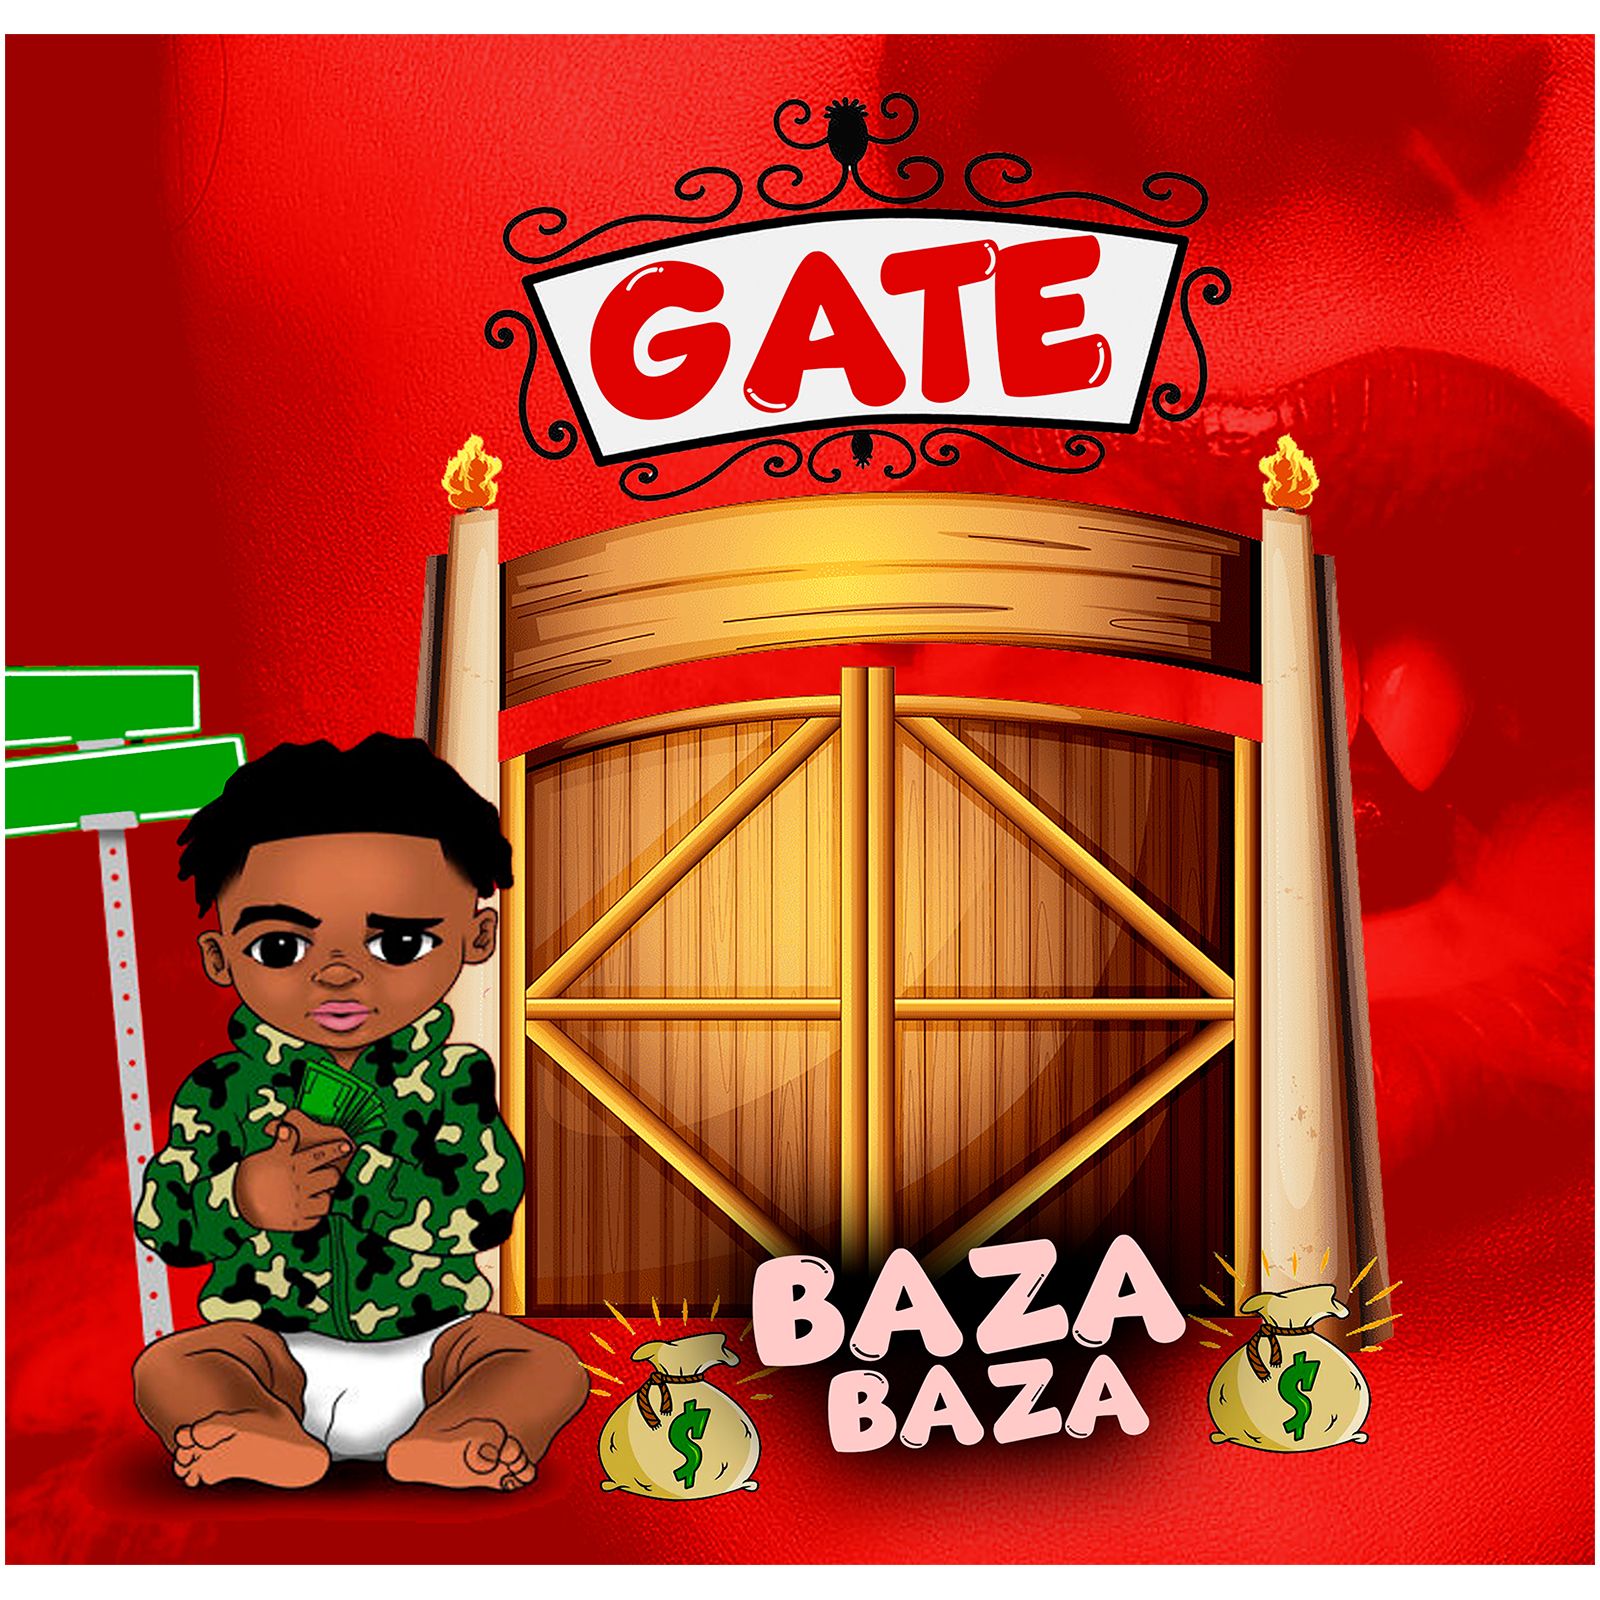 Baza Baza - Gate